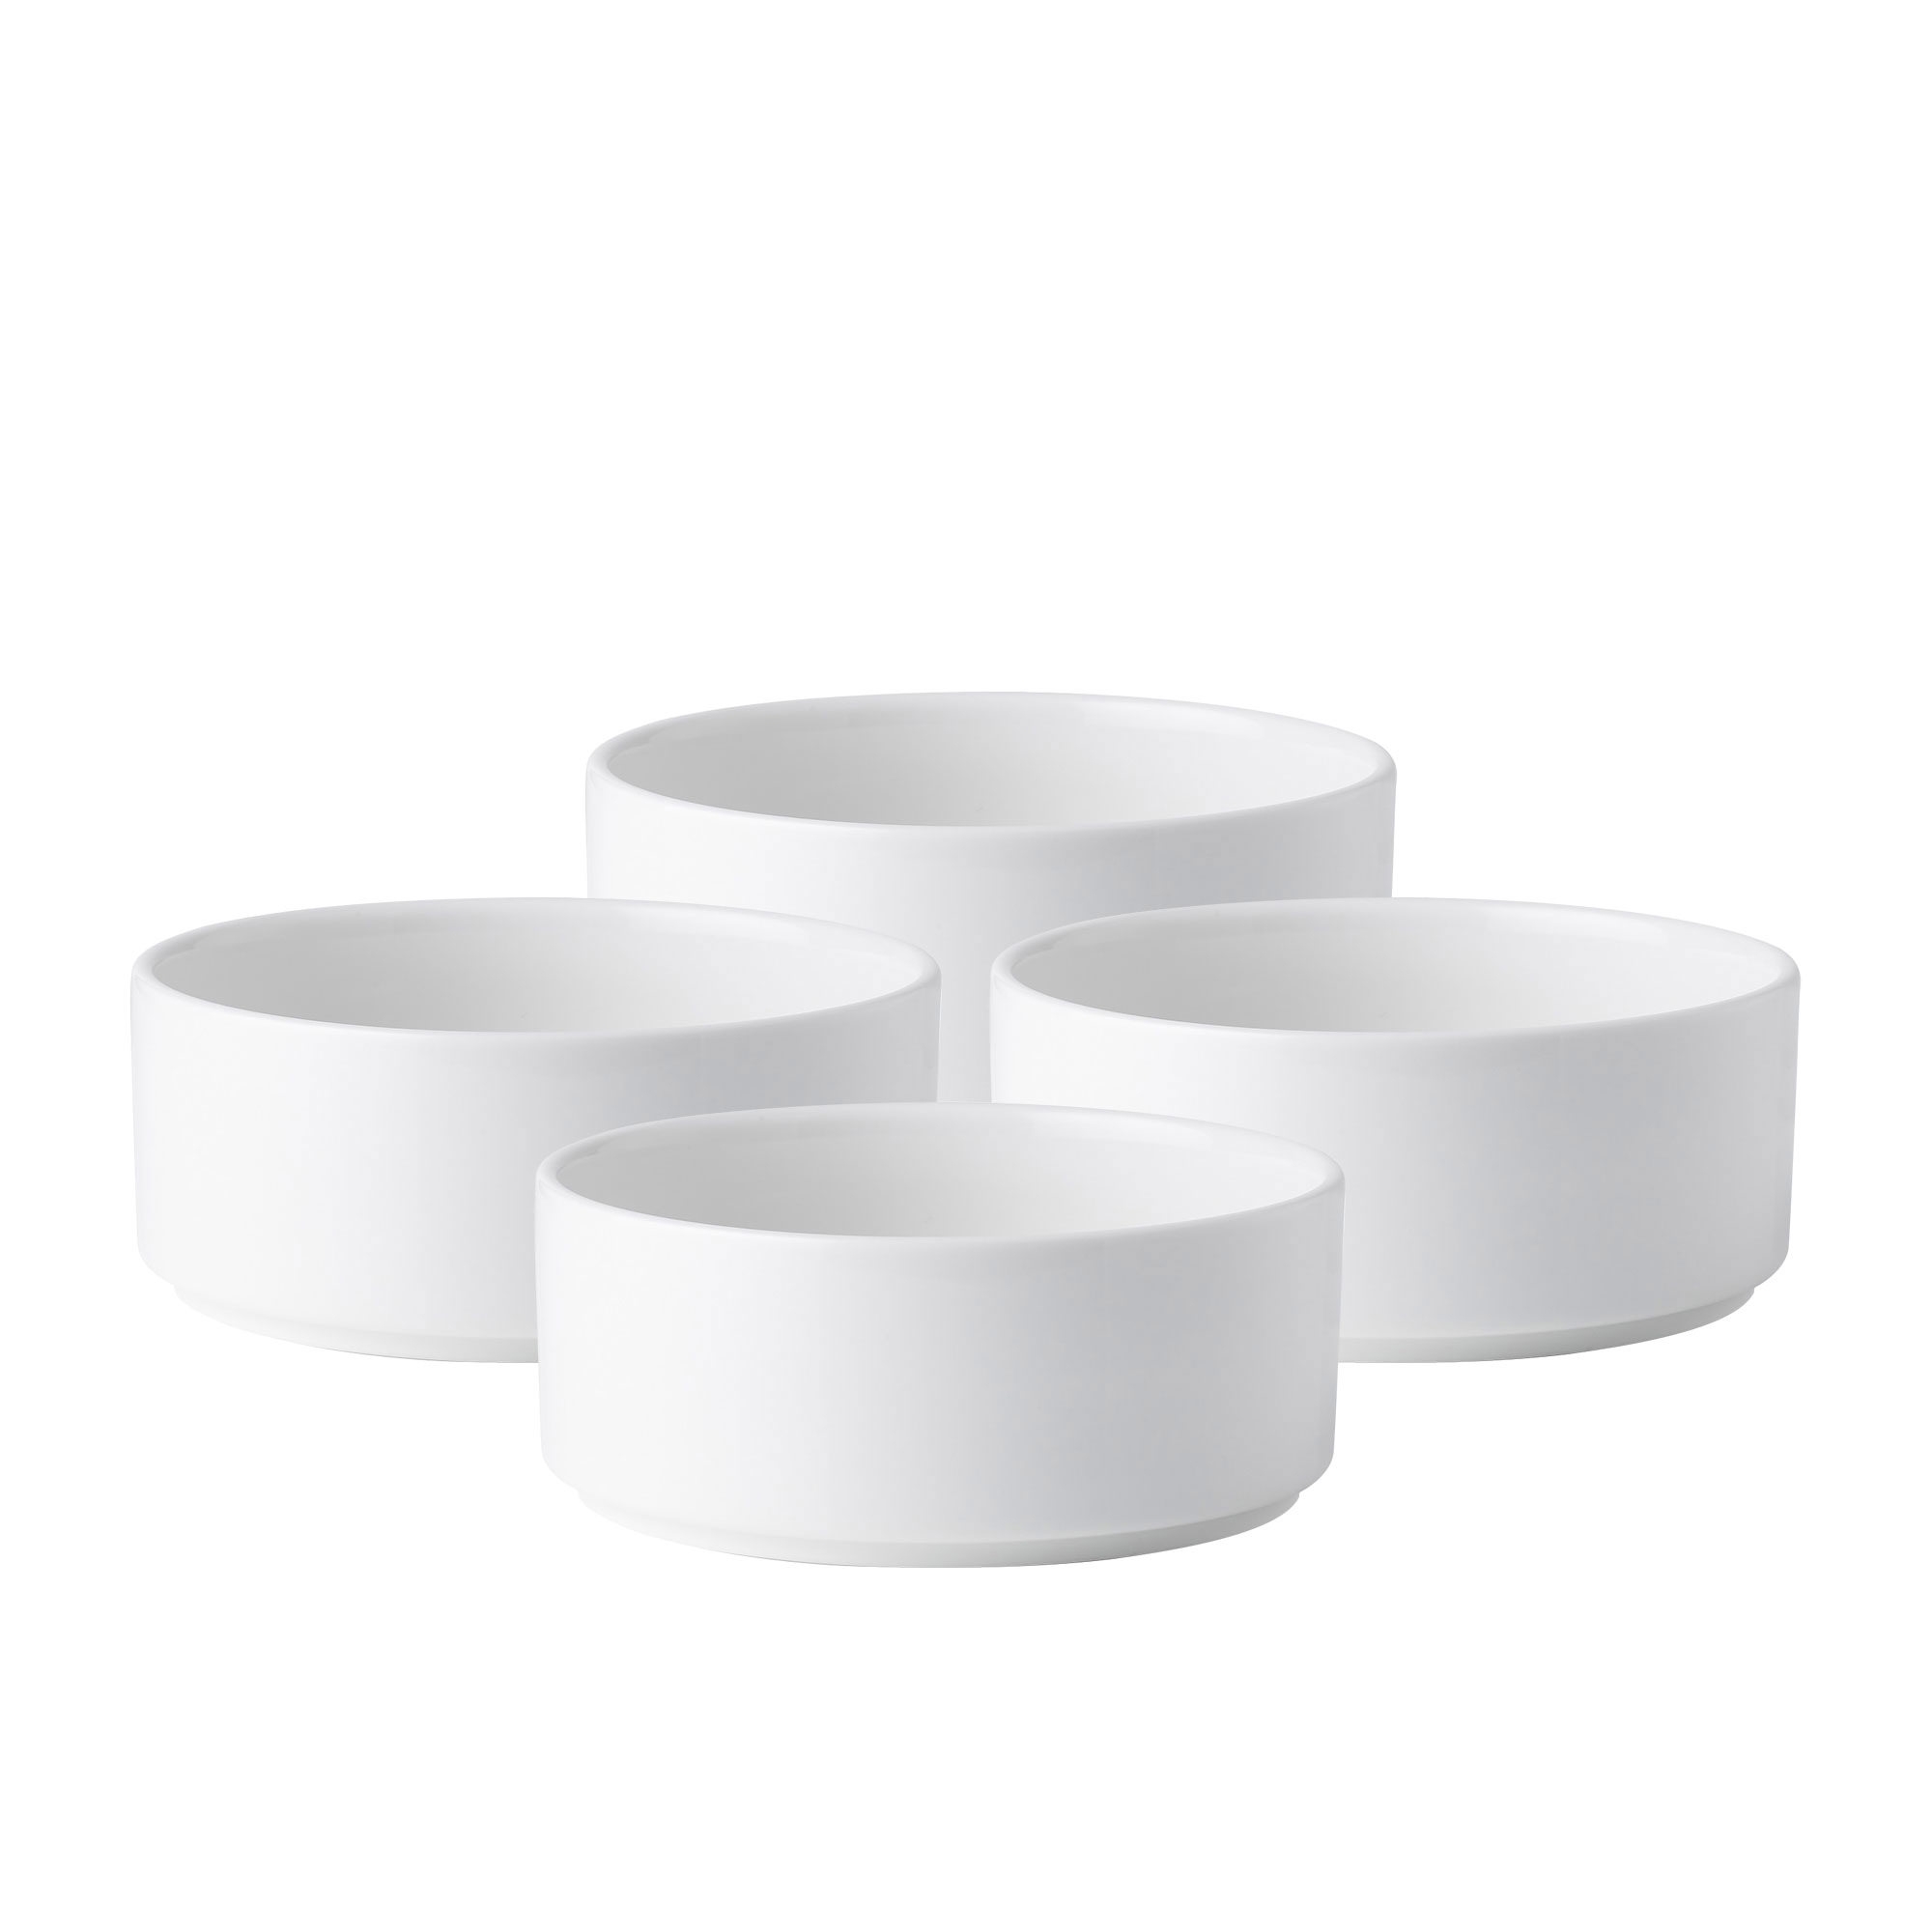 Noritake Stax White Cereal Bowl Set of 4 Image 1